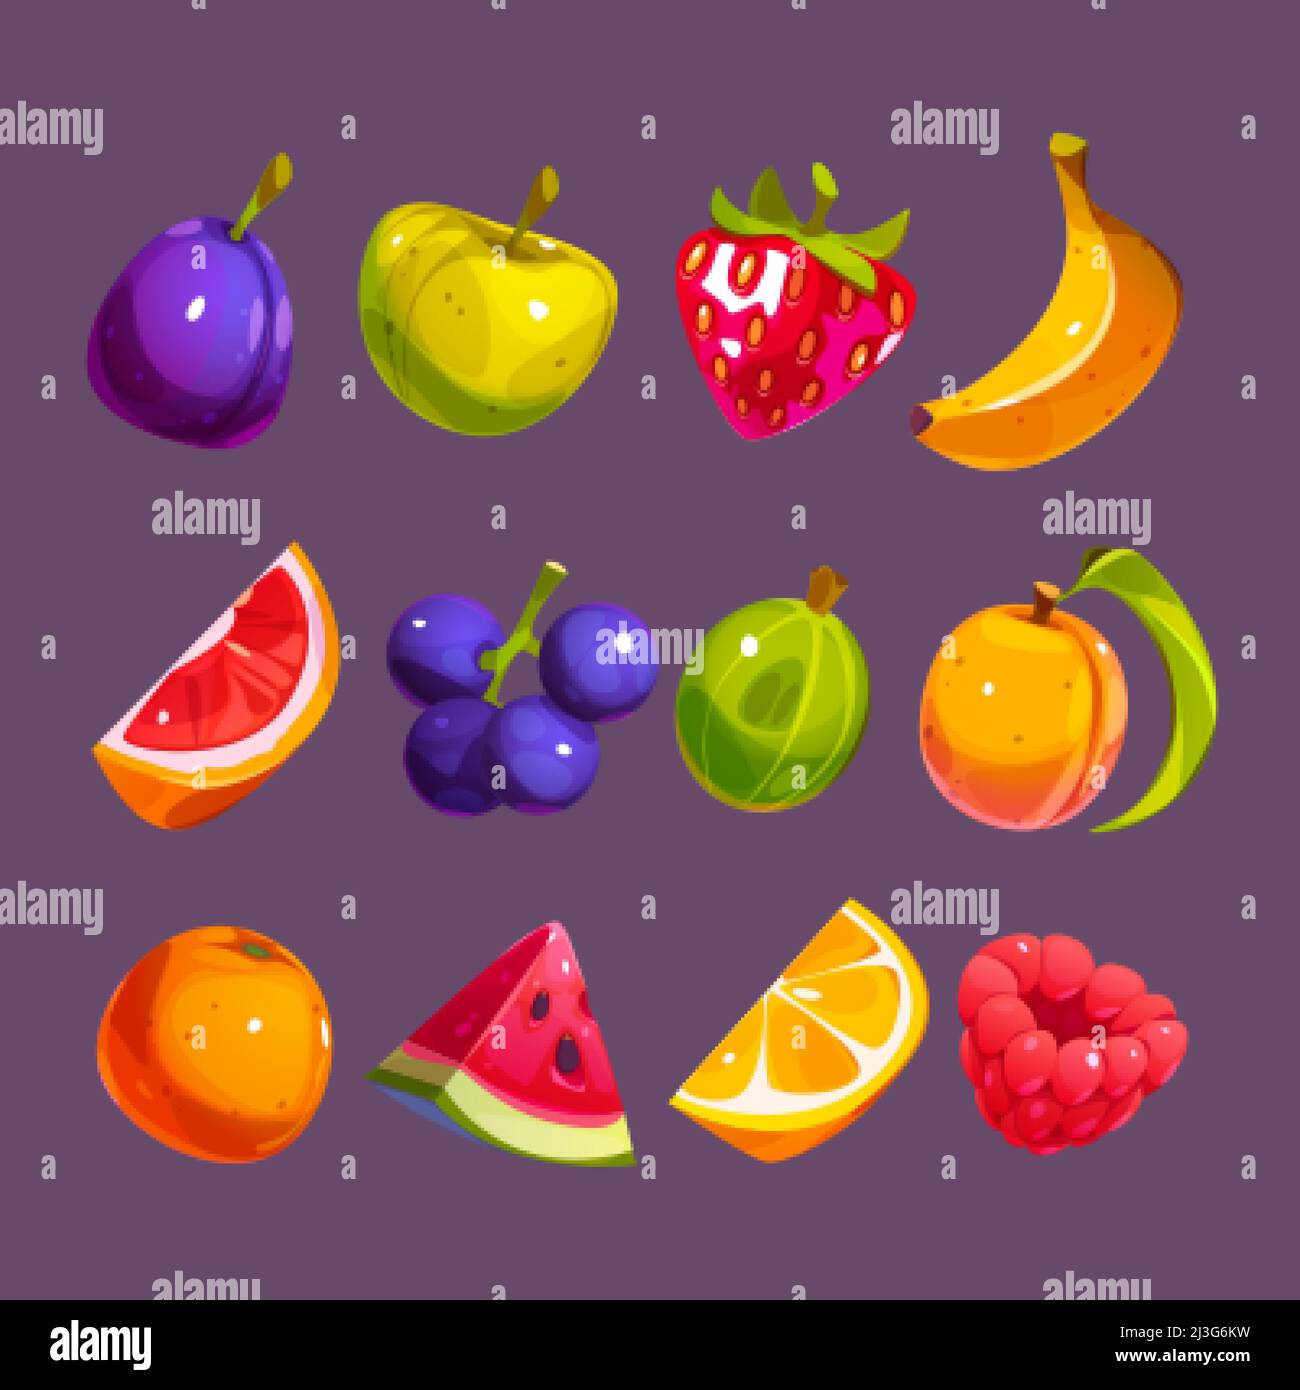 Symbole für Früchte und Beeren, Erdbeere, Pflaume, Orange, Apfel, Banane und Wassermelone. Vektor-Cartoon-Satz von Lebensmitteln Symbole, Himbeere, Pfirsich, Grapefruit slic Stock Vektor